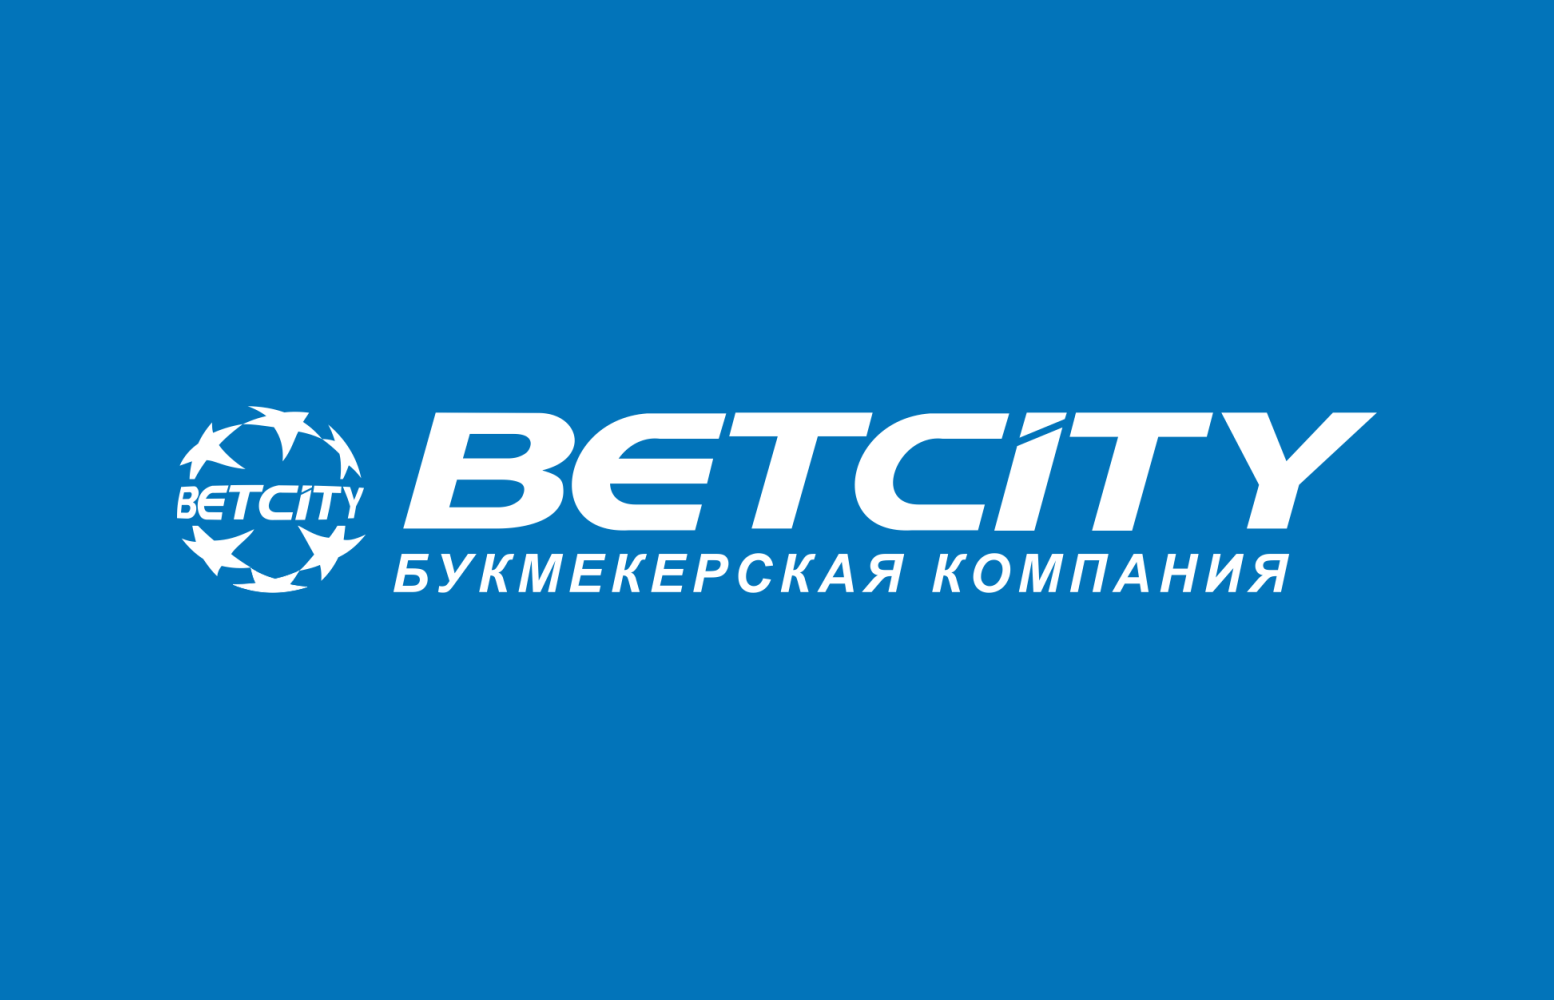 Клиент БЕТСИТИ выиграл более 200 тысяч рублей, поставив на Riyadh Masters 2022